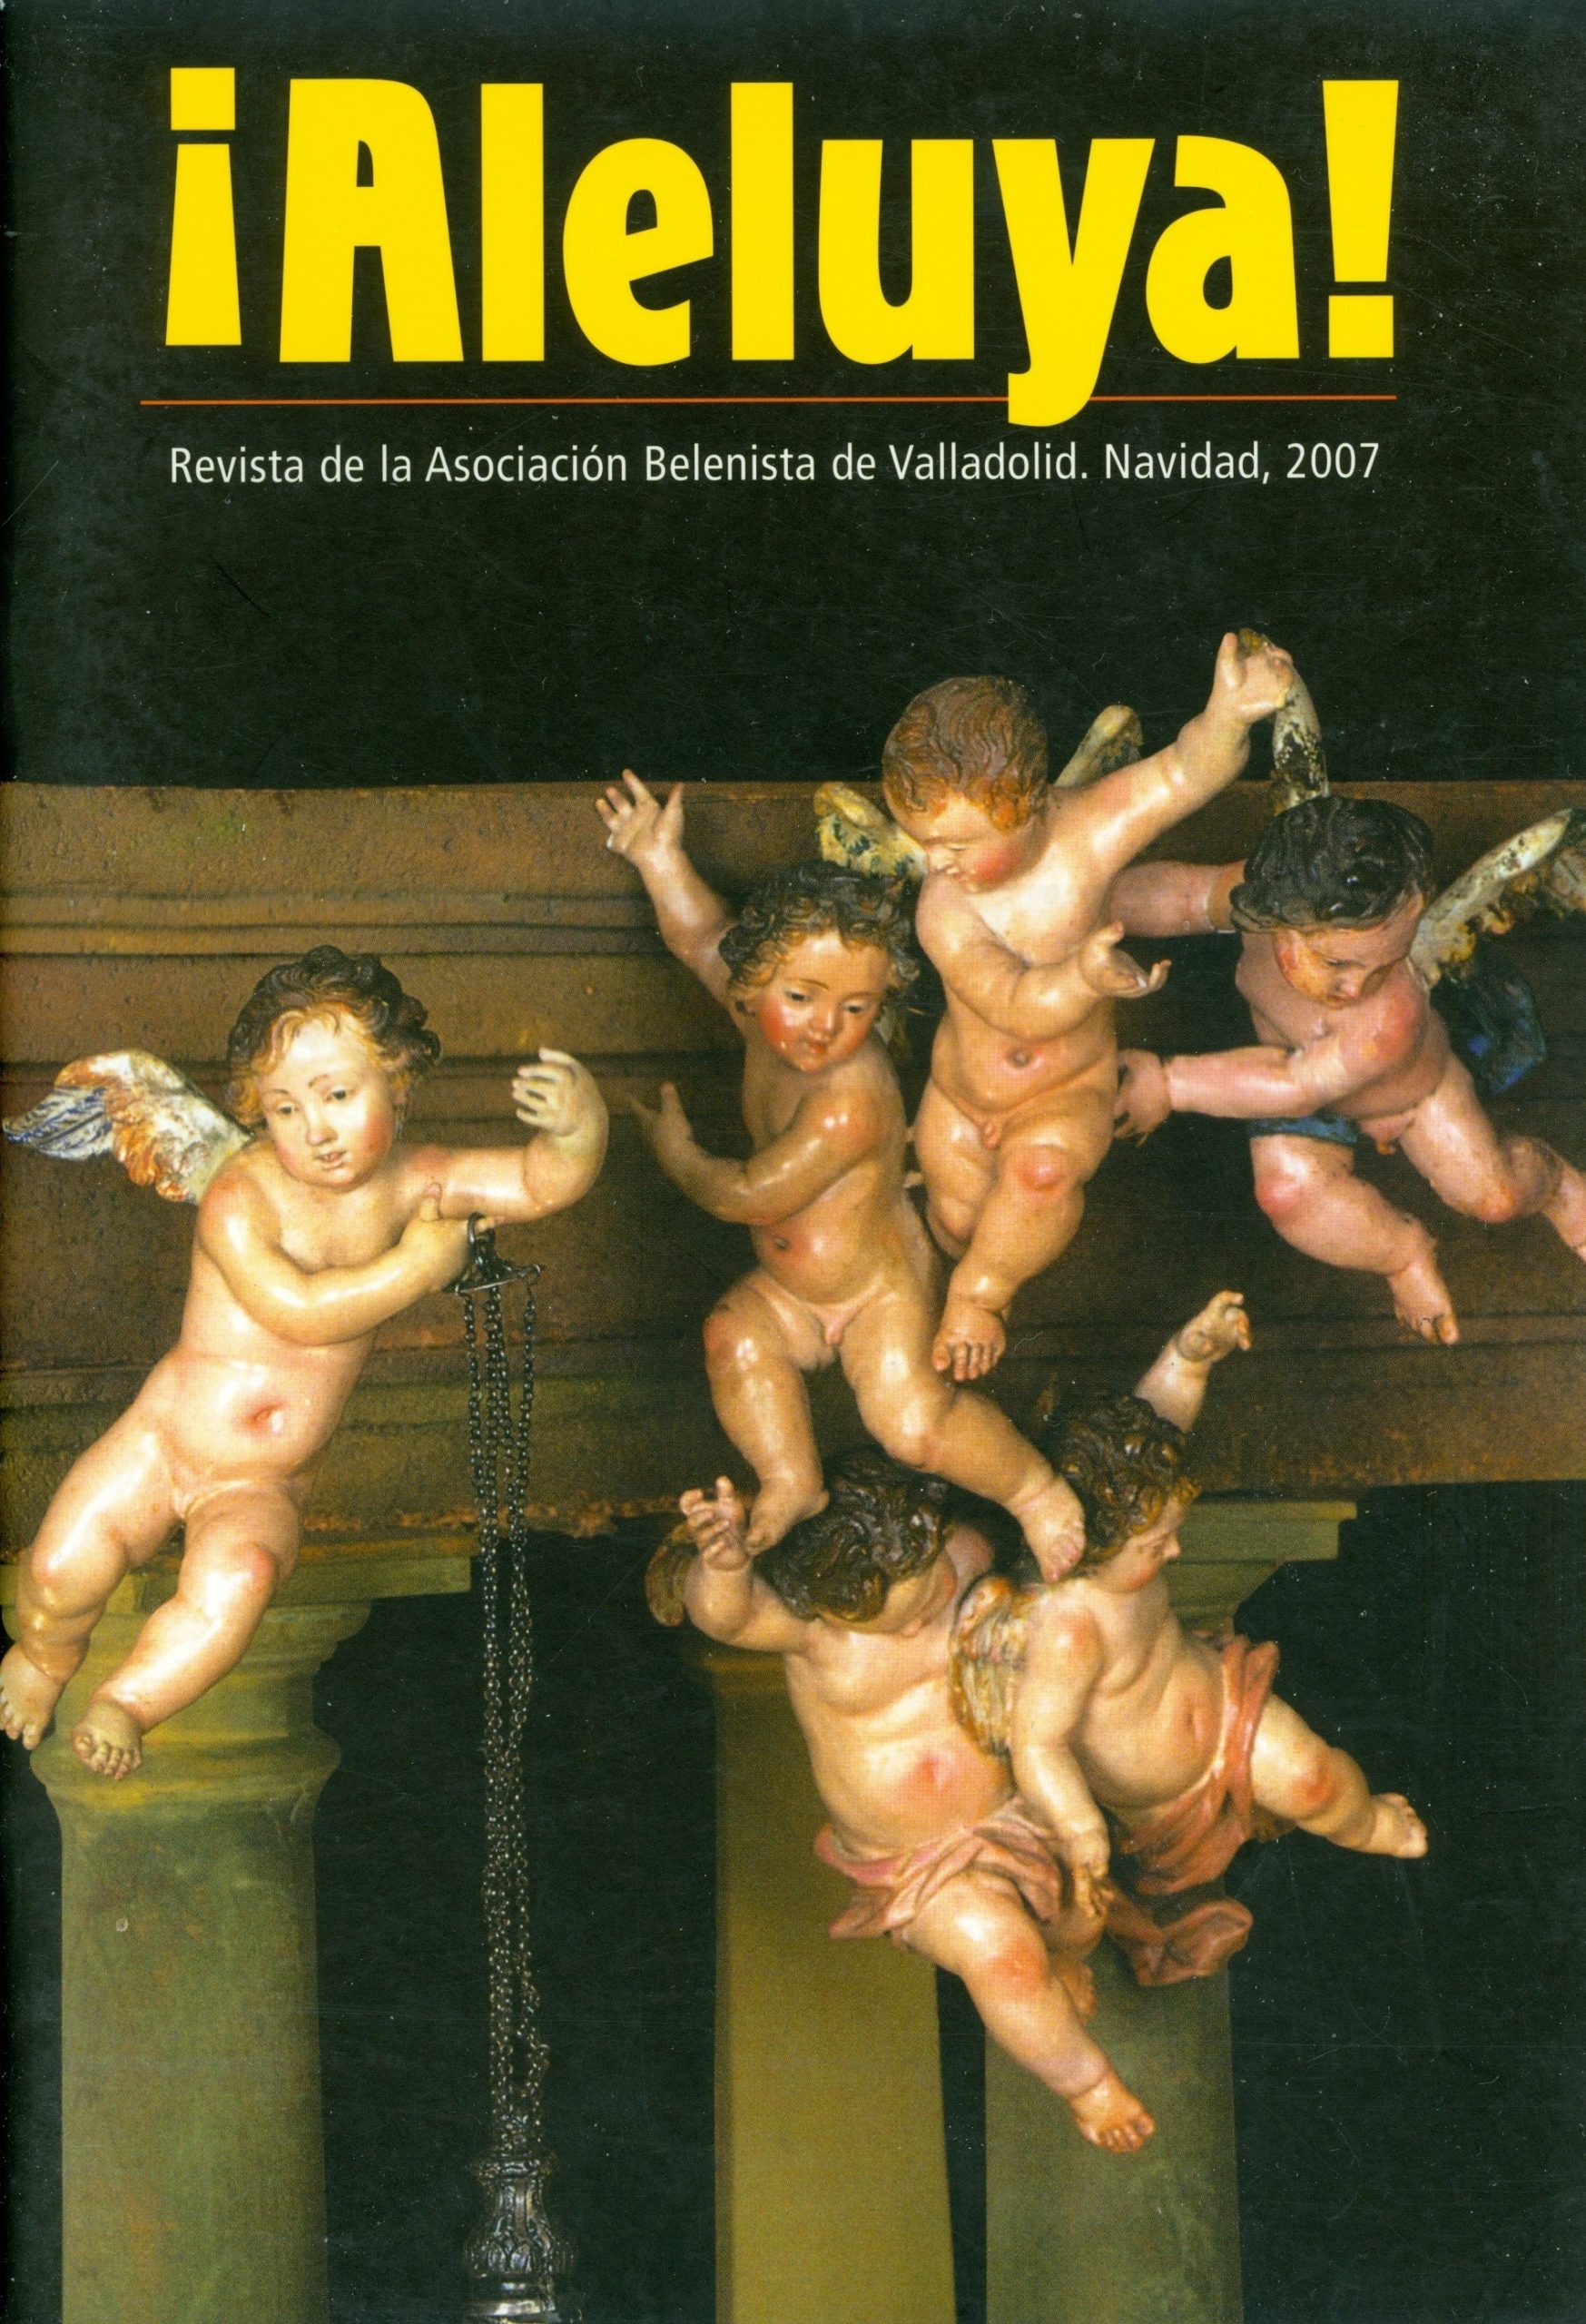 Portada de la revista ¡Aleluya! n.º 2 - Asociación Belenista de Valladolid (2007)